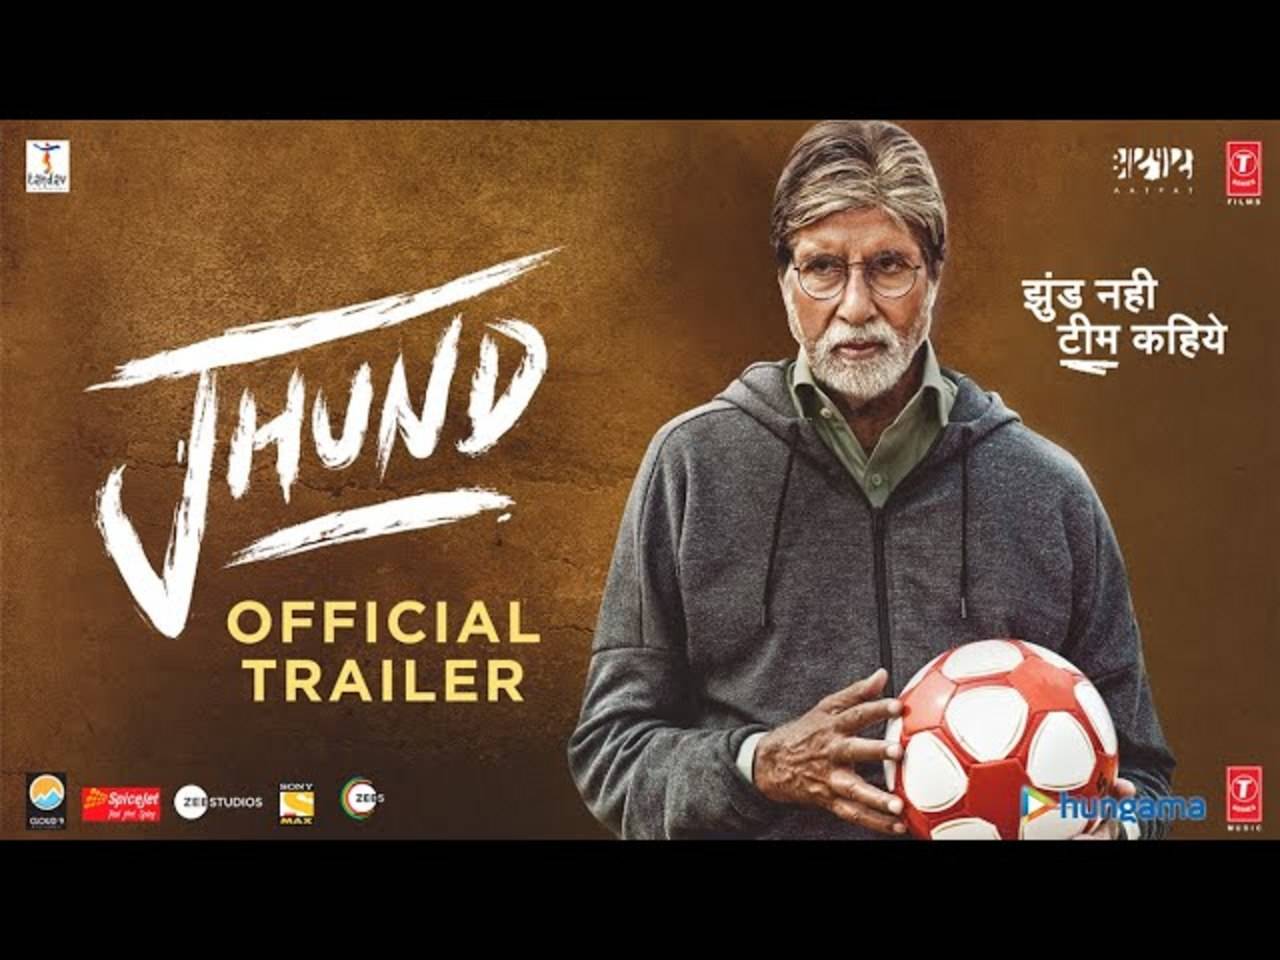 Jhund Movie OTT Release Date I OTT Rights I OTT Platform I Amitach Bachchan  I Jhund OTT Release Date - YouTube